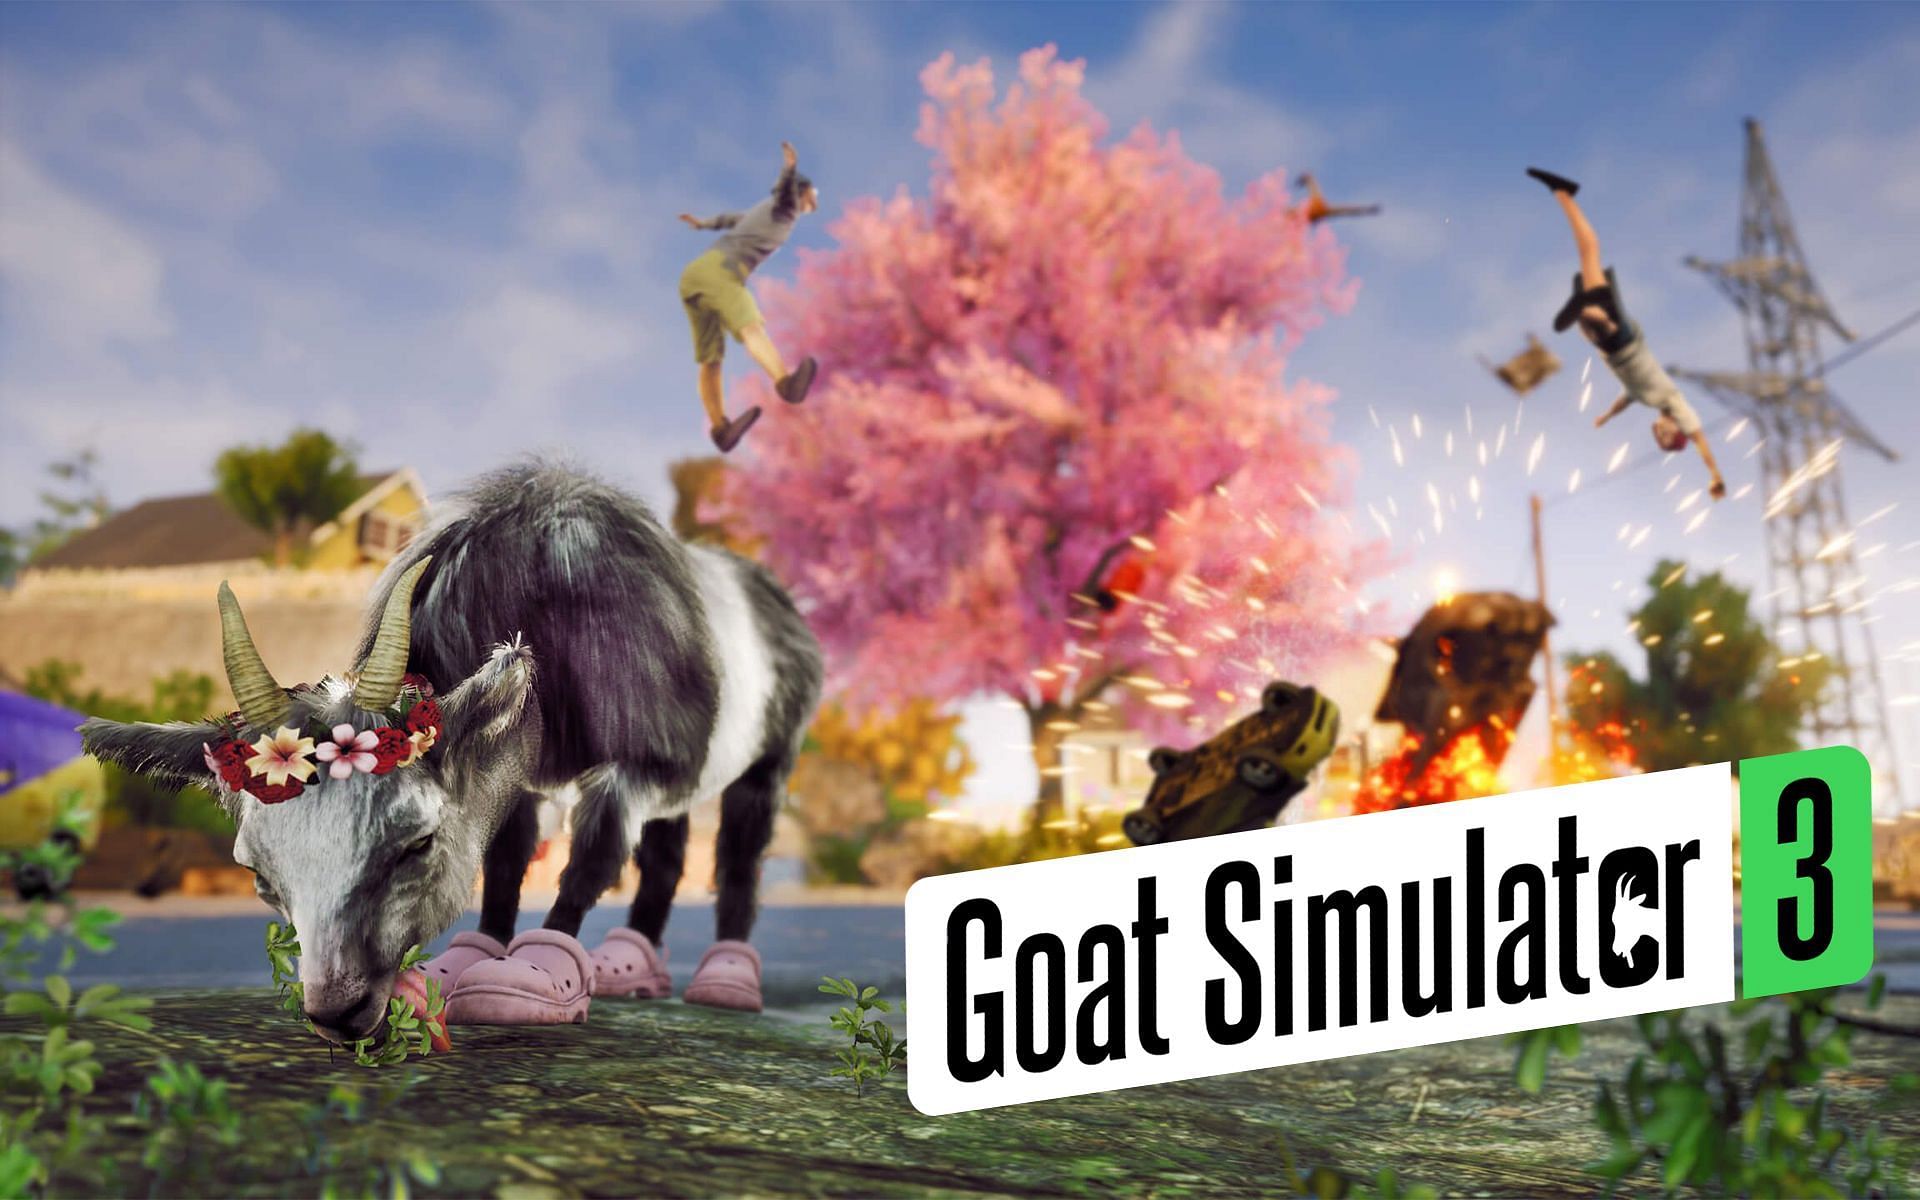 Absurdity in video games peak as Goat Simulator 3's release is ...